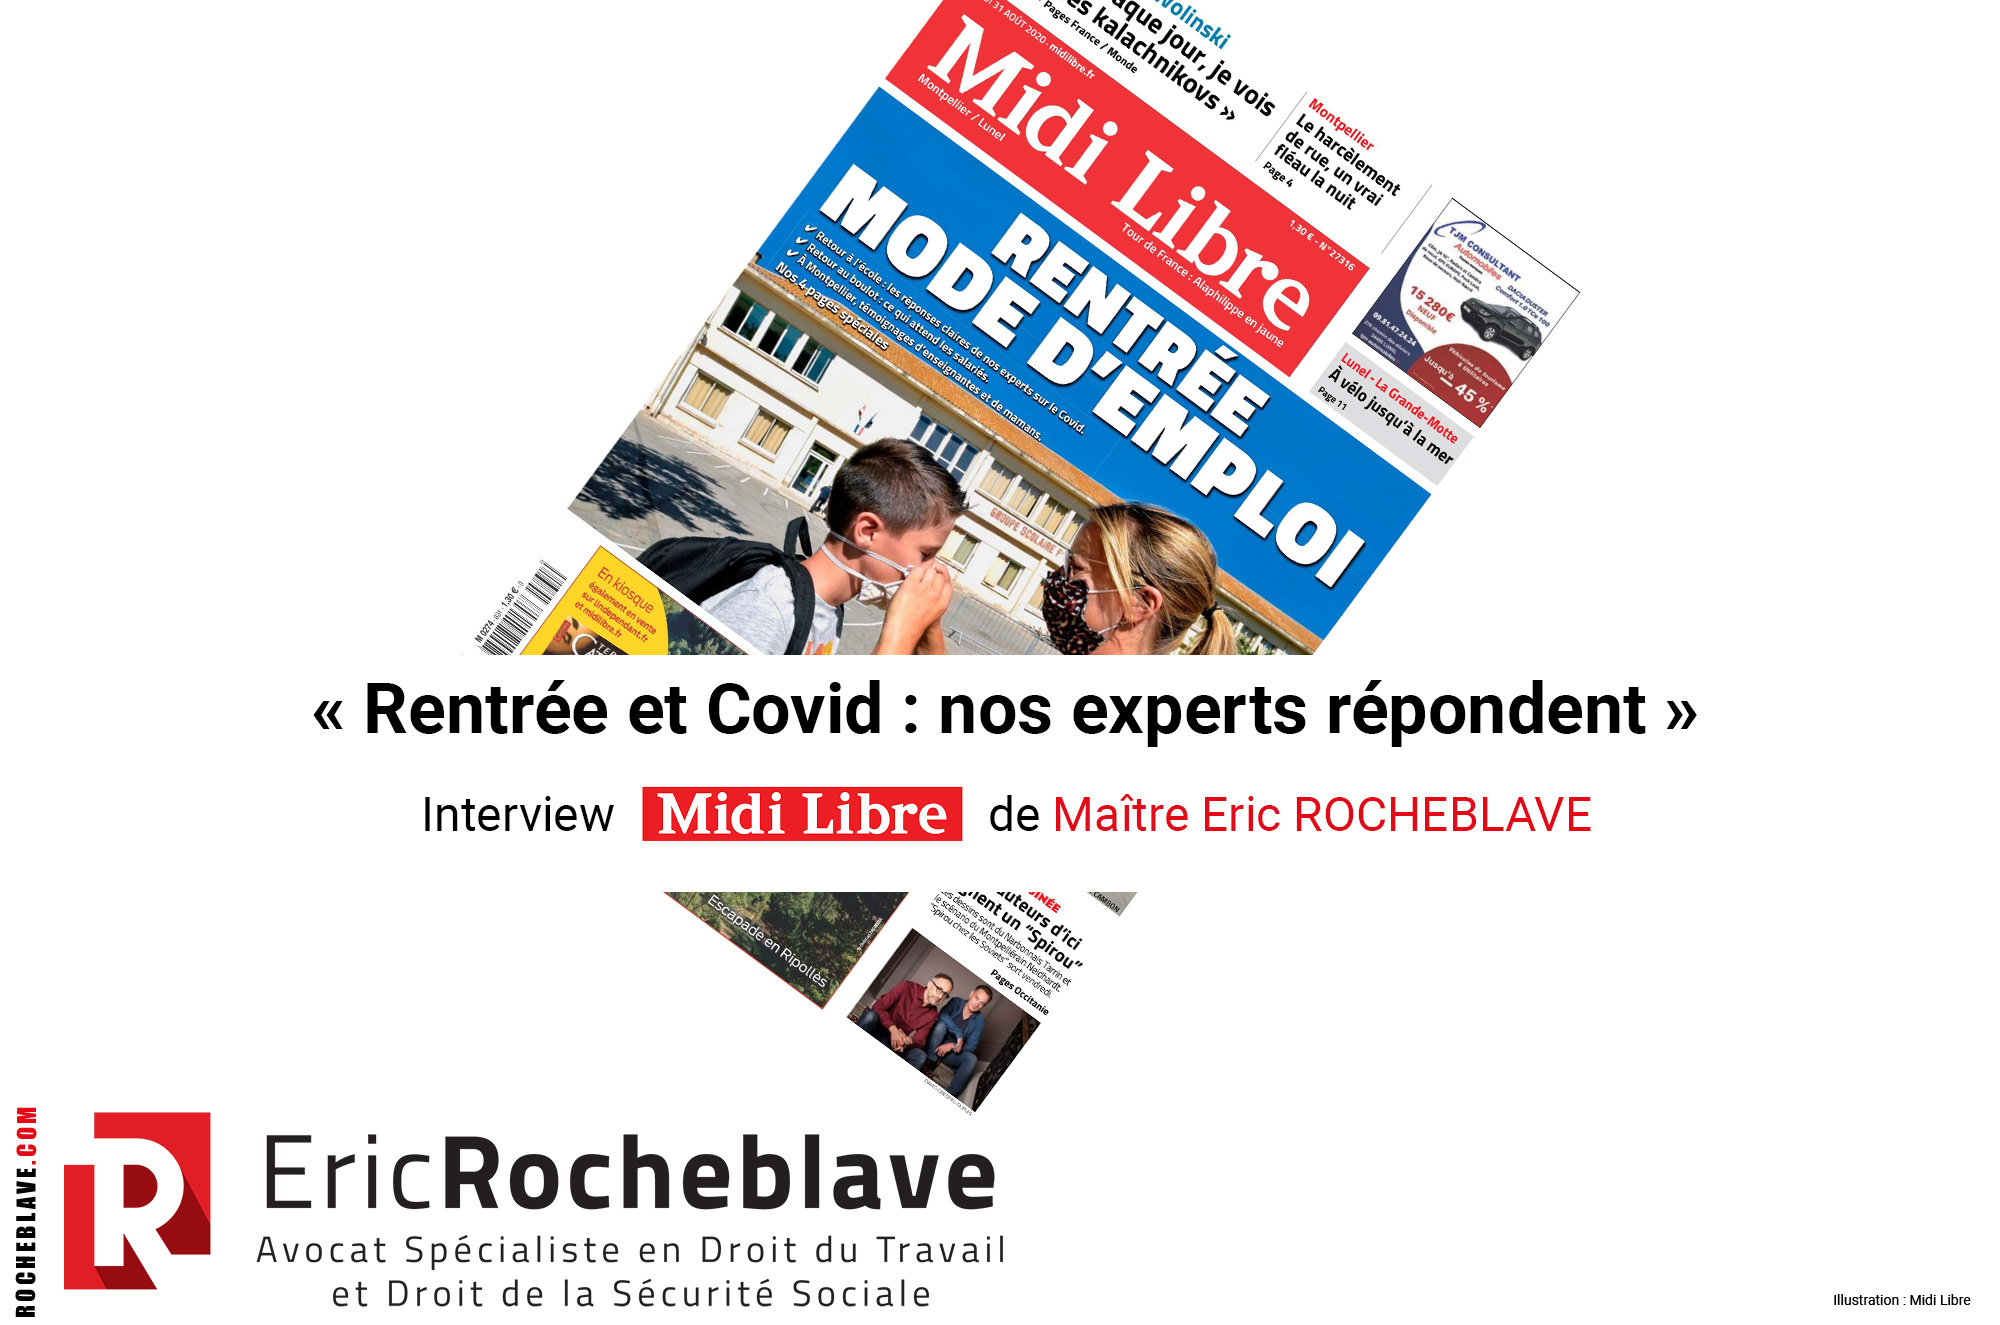 « Rentrée et Covid : nos experts répondent » Interview Midi Libre de Maître Eric ROCHEBLAVE 